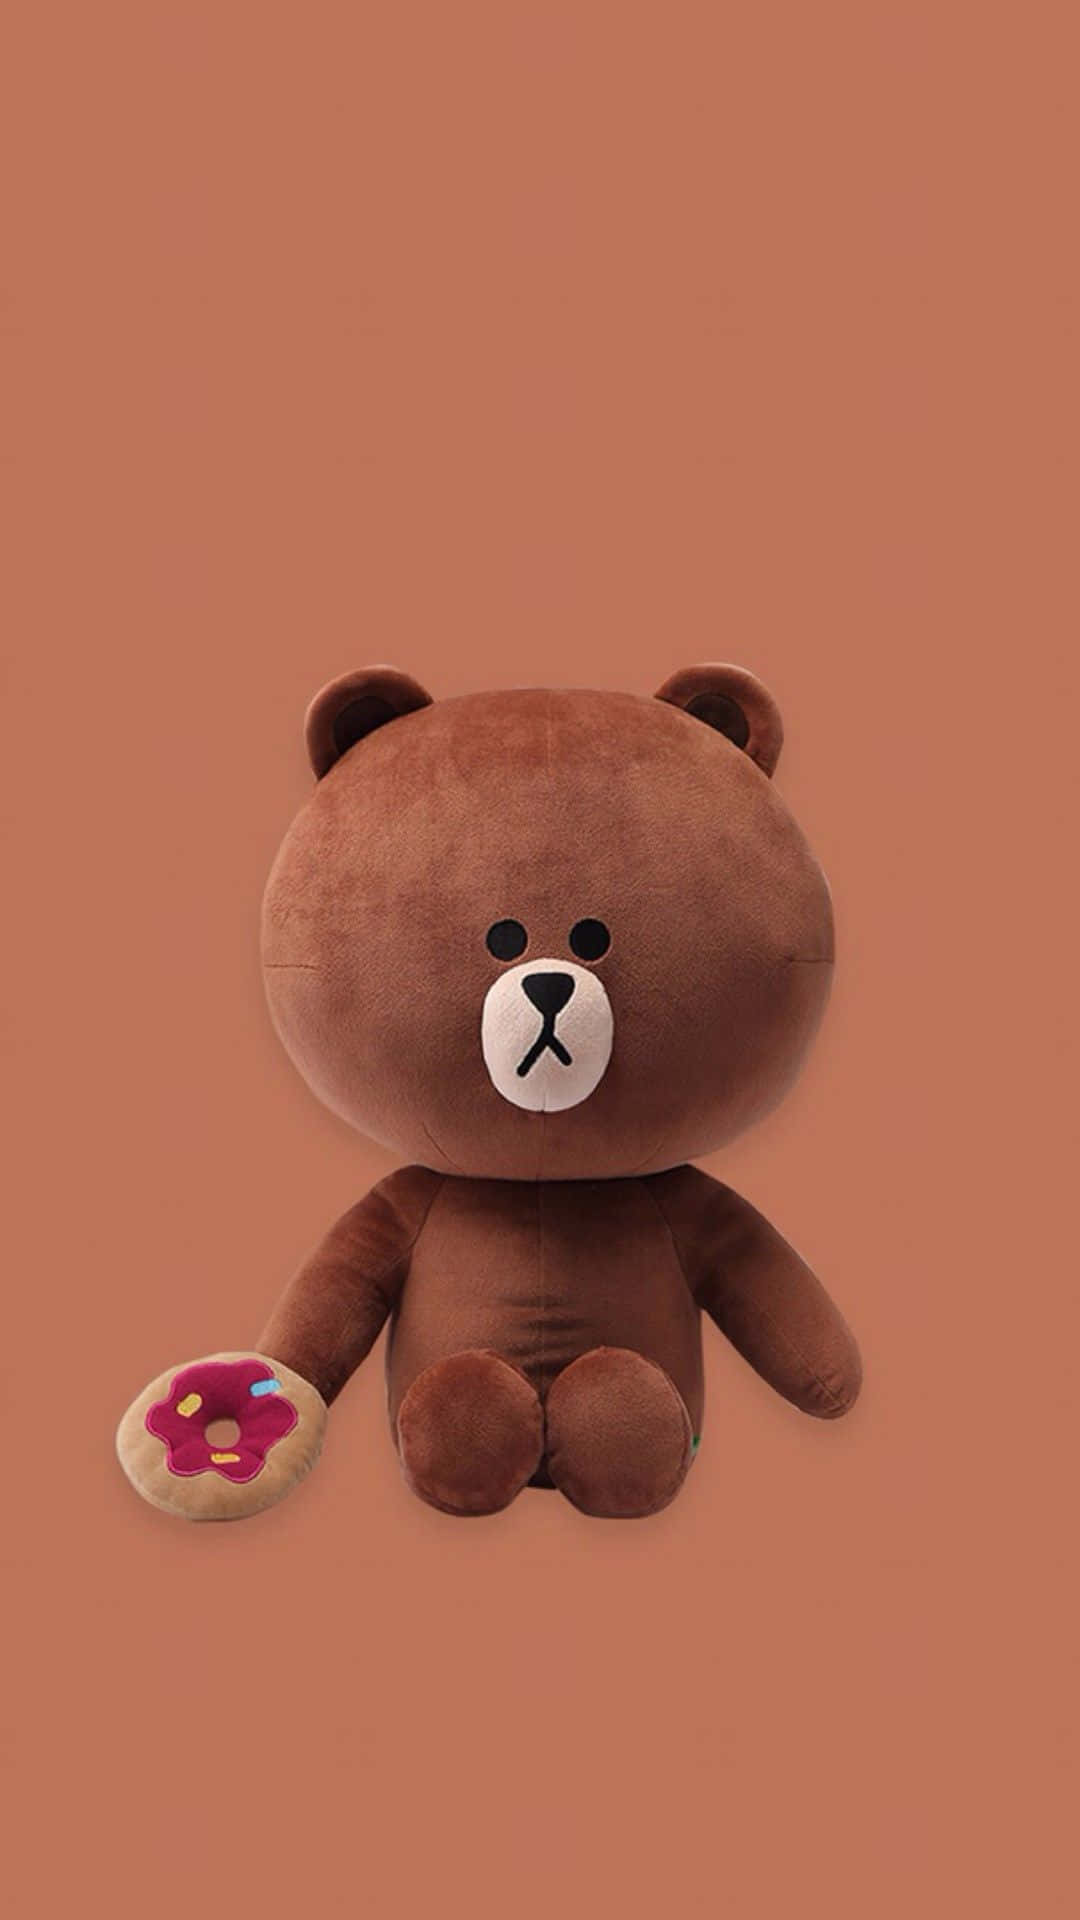 Adorable Teddy Bear On A Vibrant Background